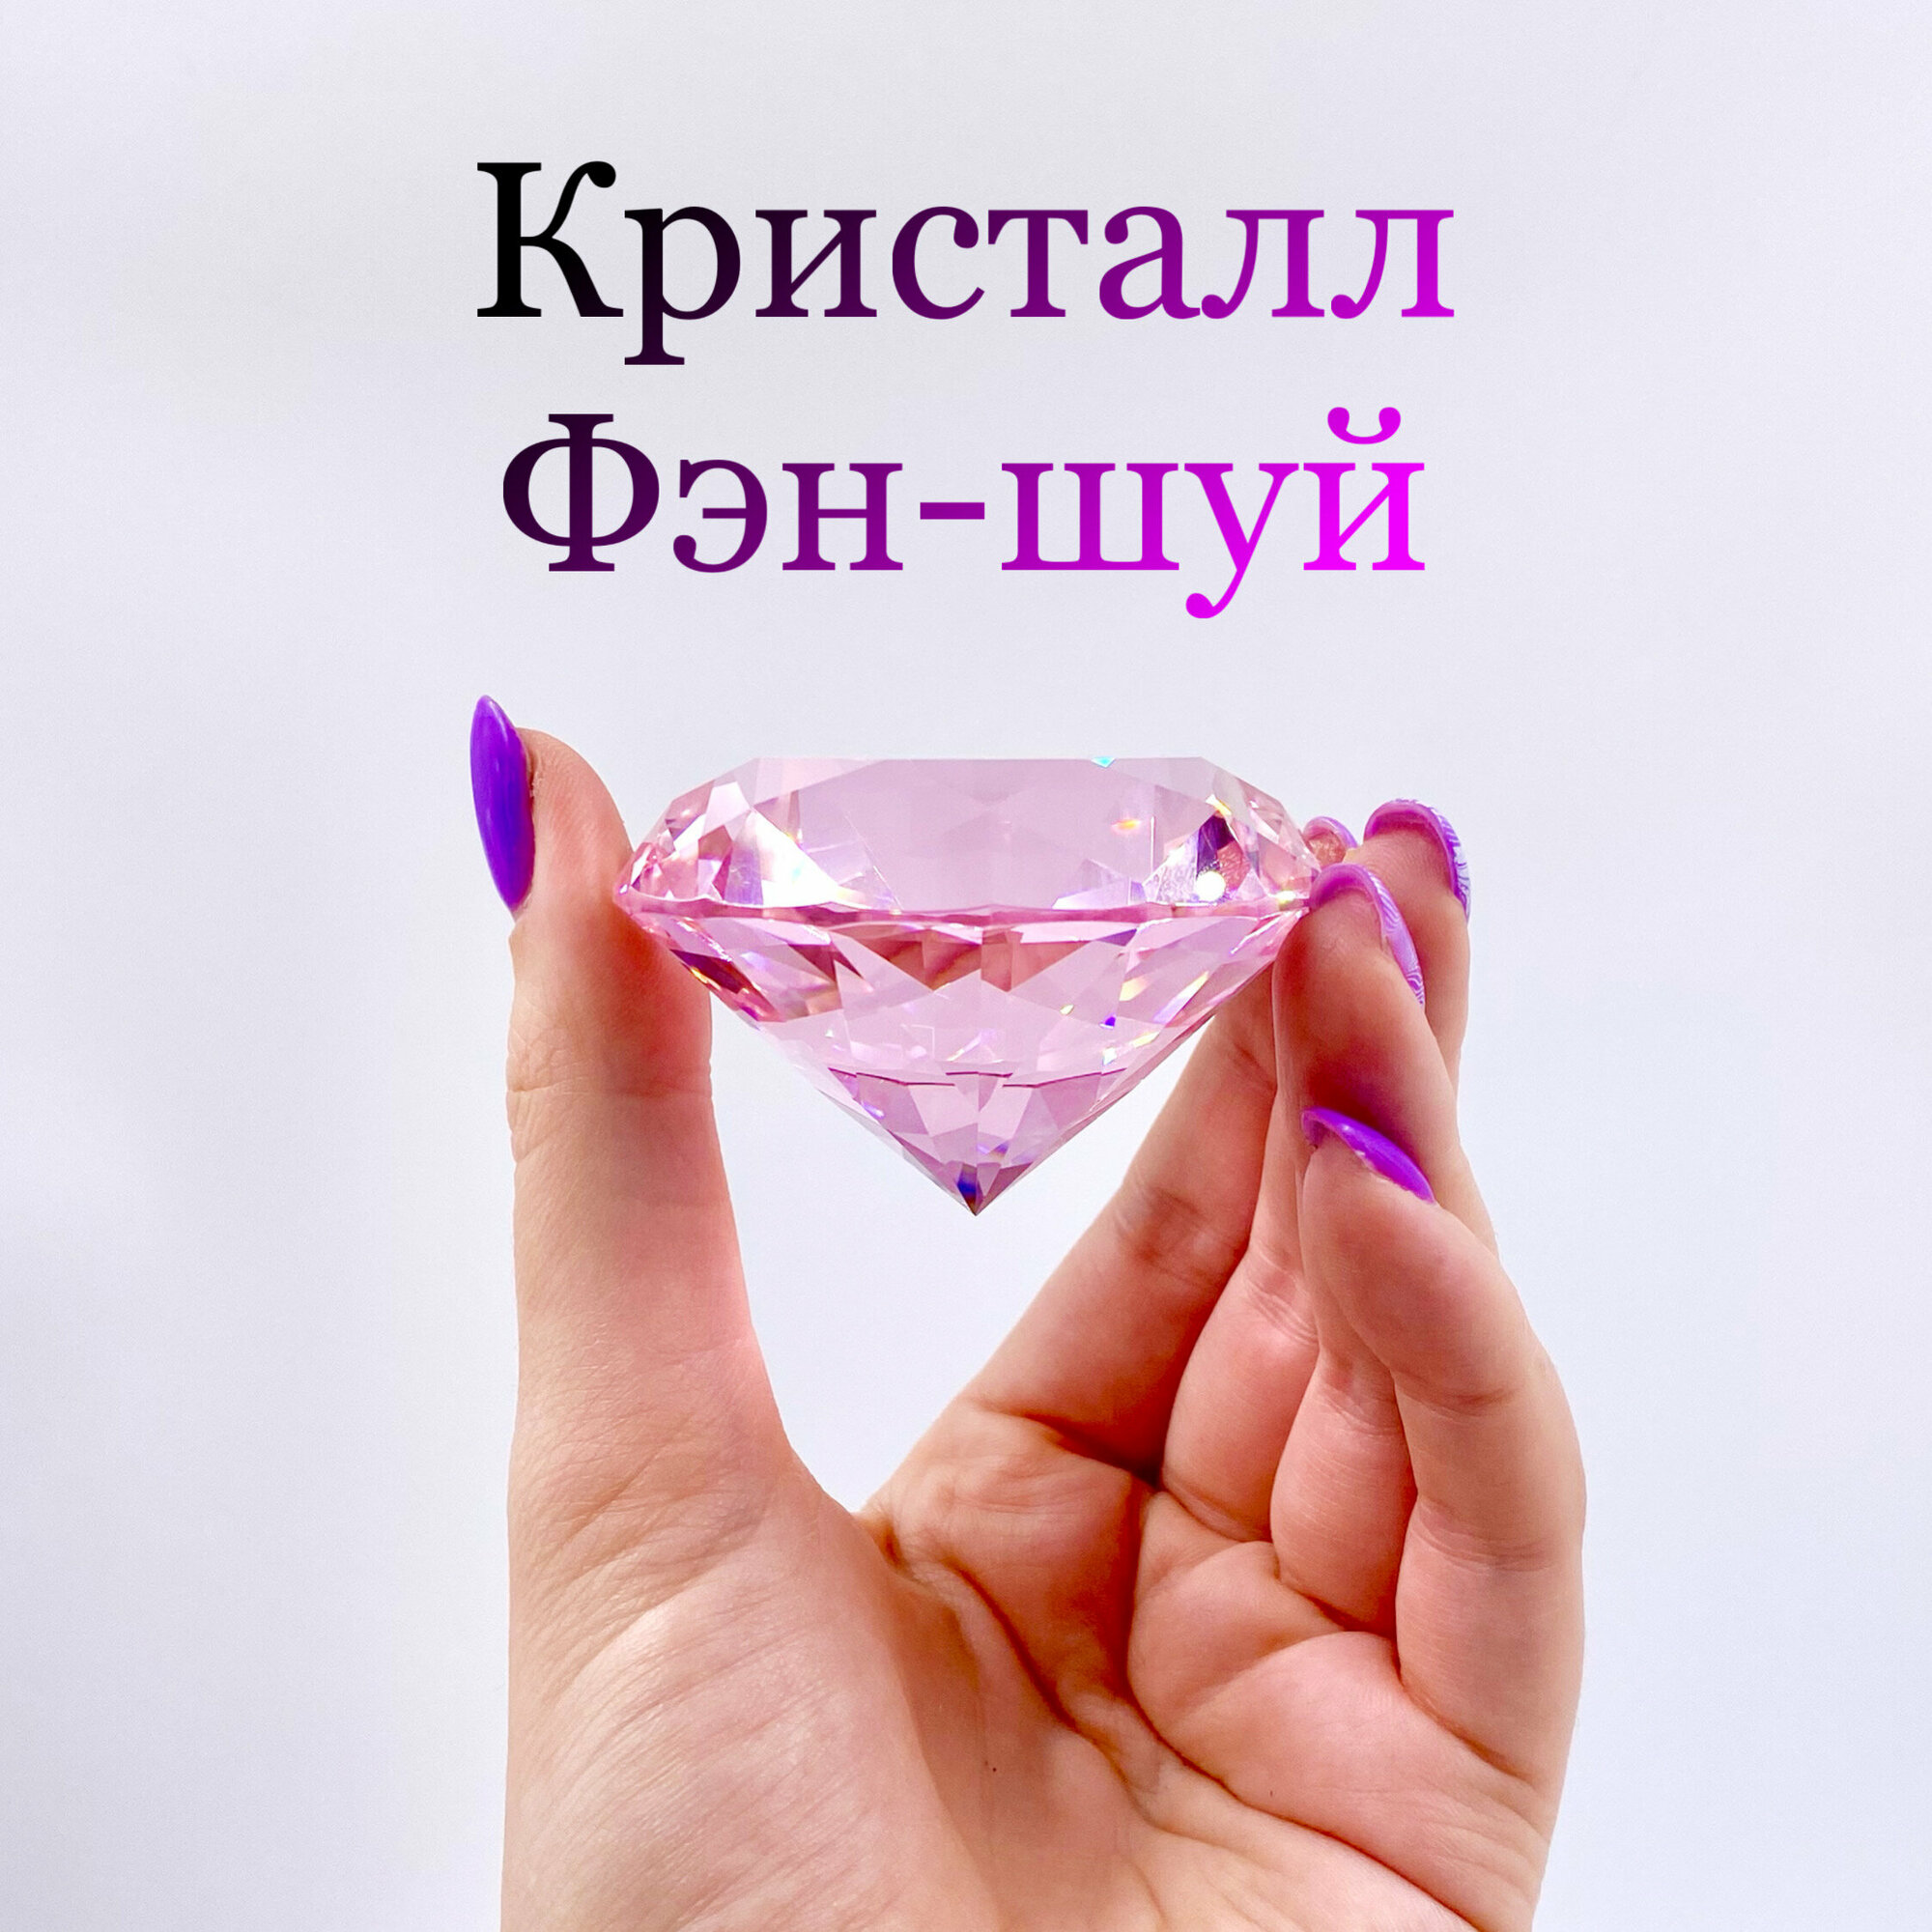 Бриллиант-хрустальный розовый "Фэн-шуй" диаметр 6 см